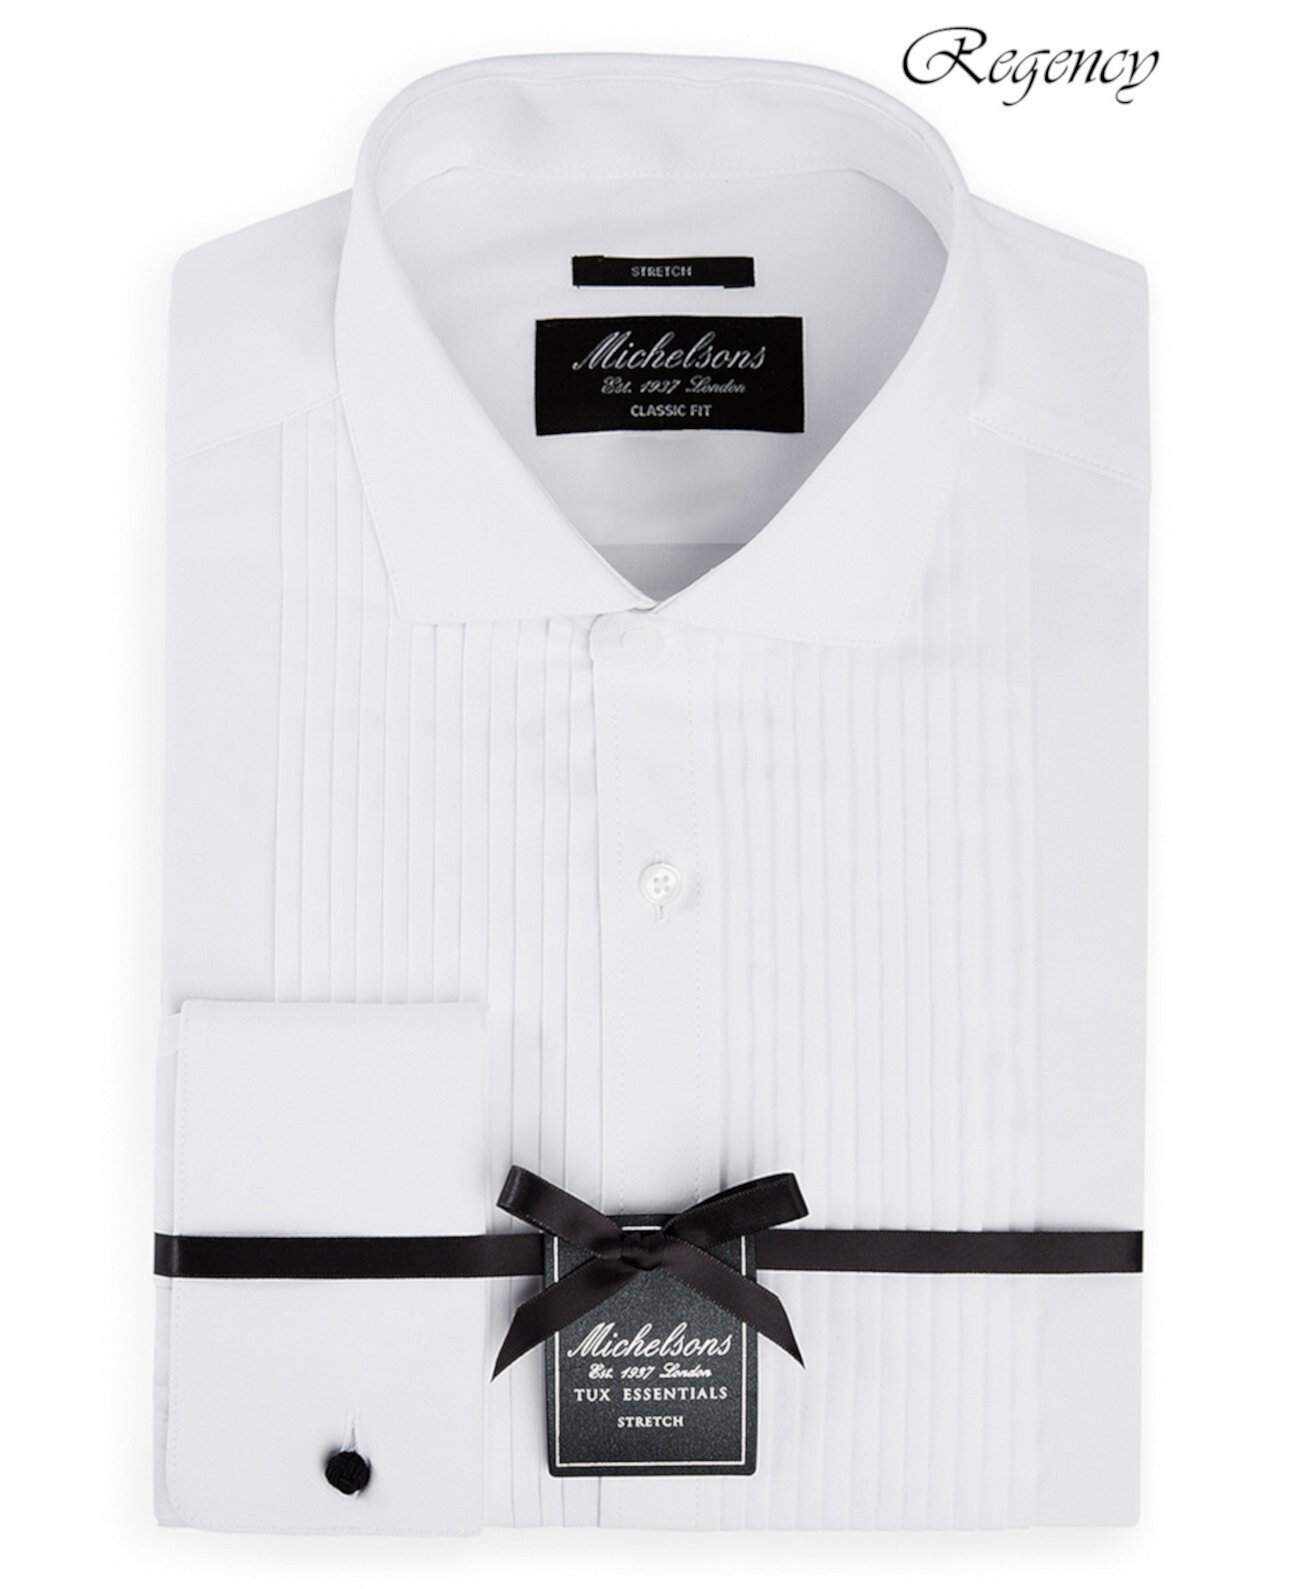 of London Мужская классическая / эластичная рубашка-смокинг из плотной французской манжеты MICHELSONS OF LONDON